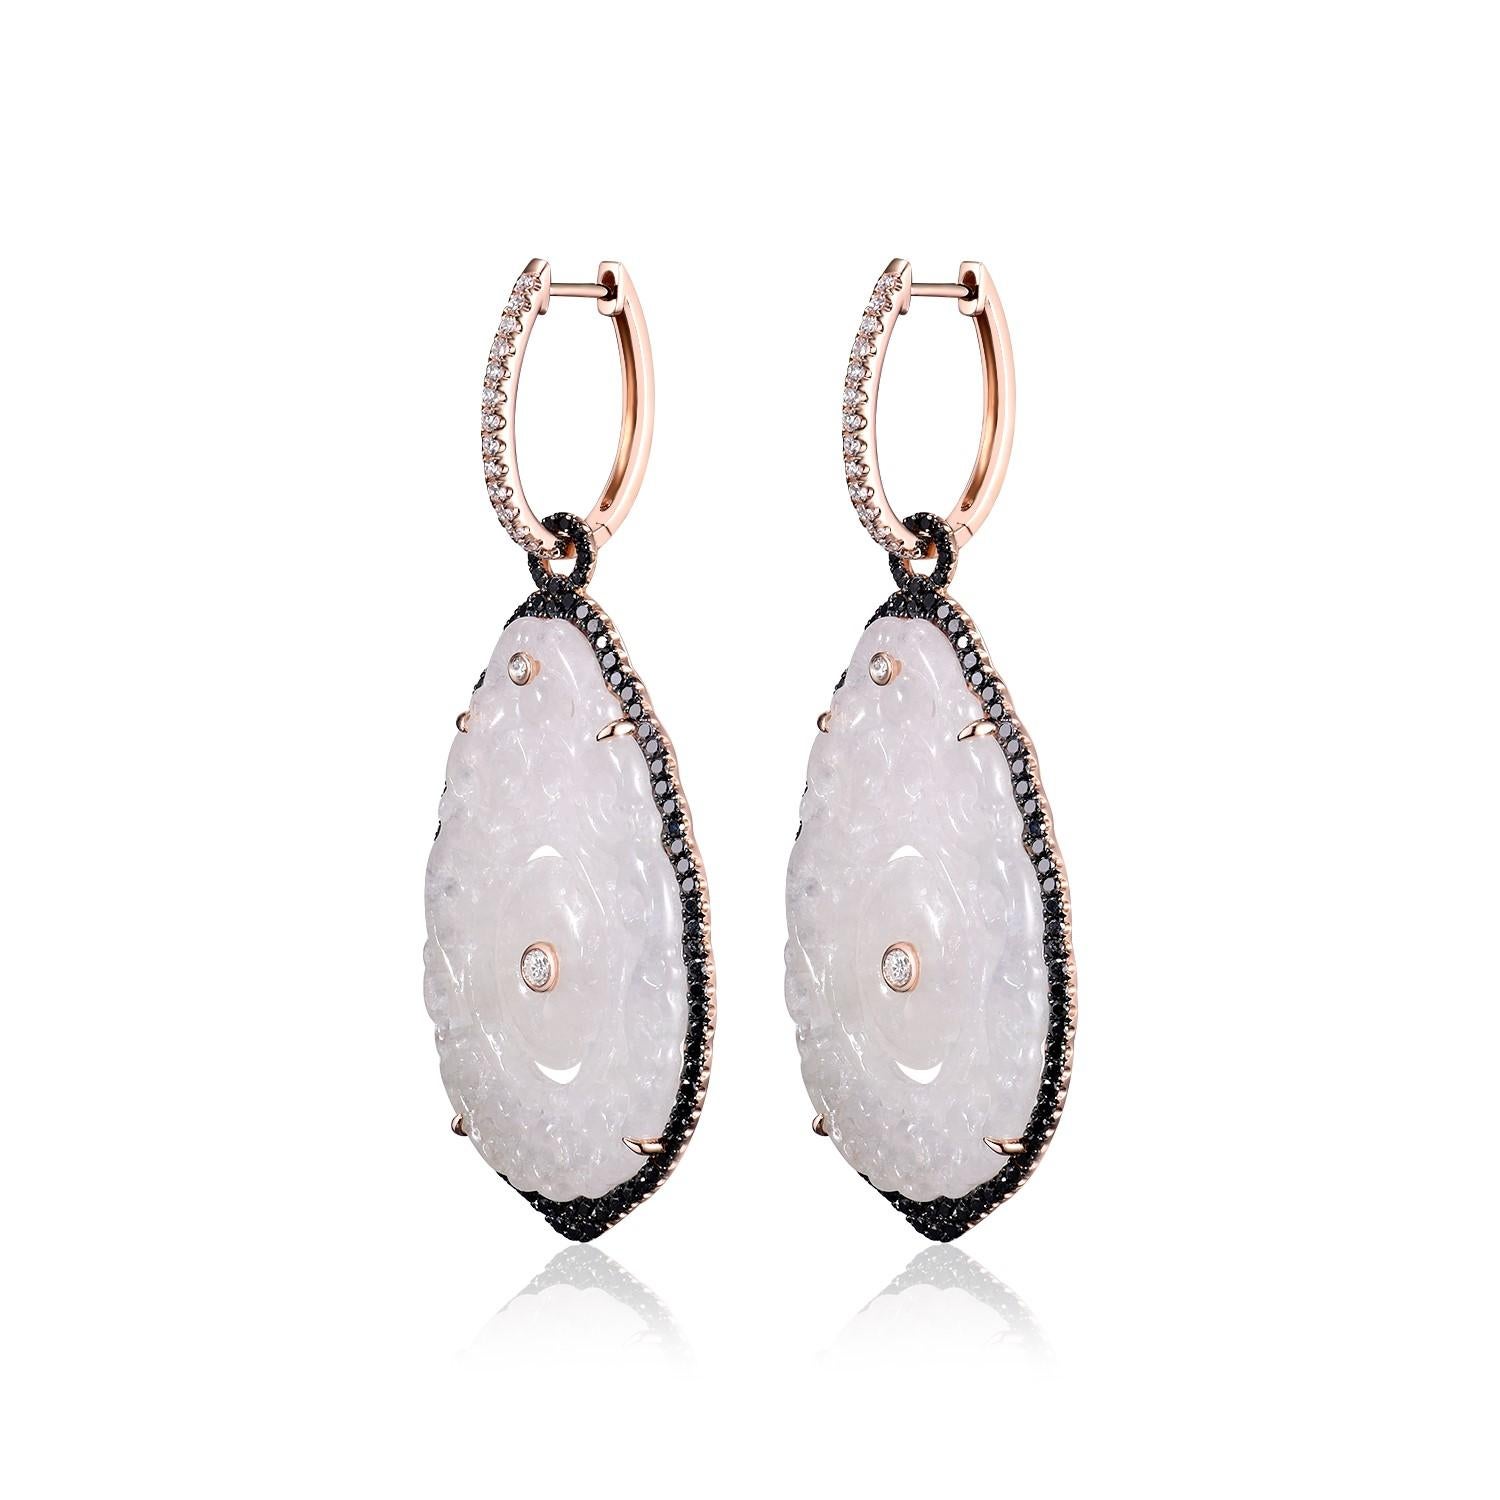 Die Vintage White Jadeit Diamond Drop Earrings aus 18 Karat Roségold sind ein wahrhaft fesselndes Paar Ohrringe, das zeitlose Schönheit und Eleganz ausstrahlt. Diese aus 18 Karat Roségold gefertigten Ohrringe sind mit einer Kombination aus erlesenen